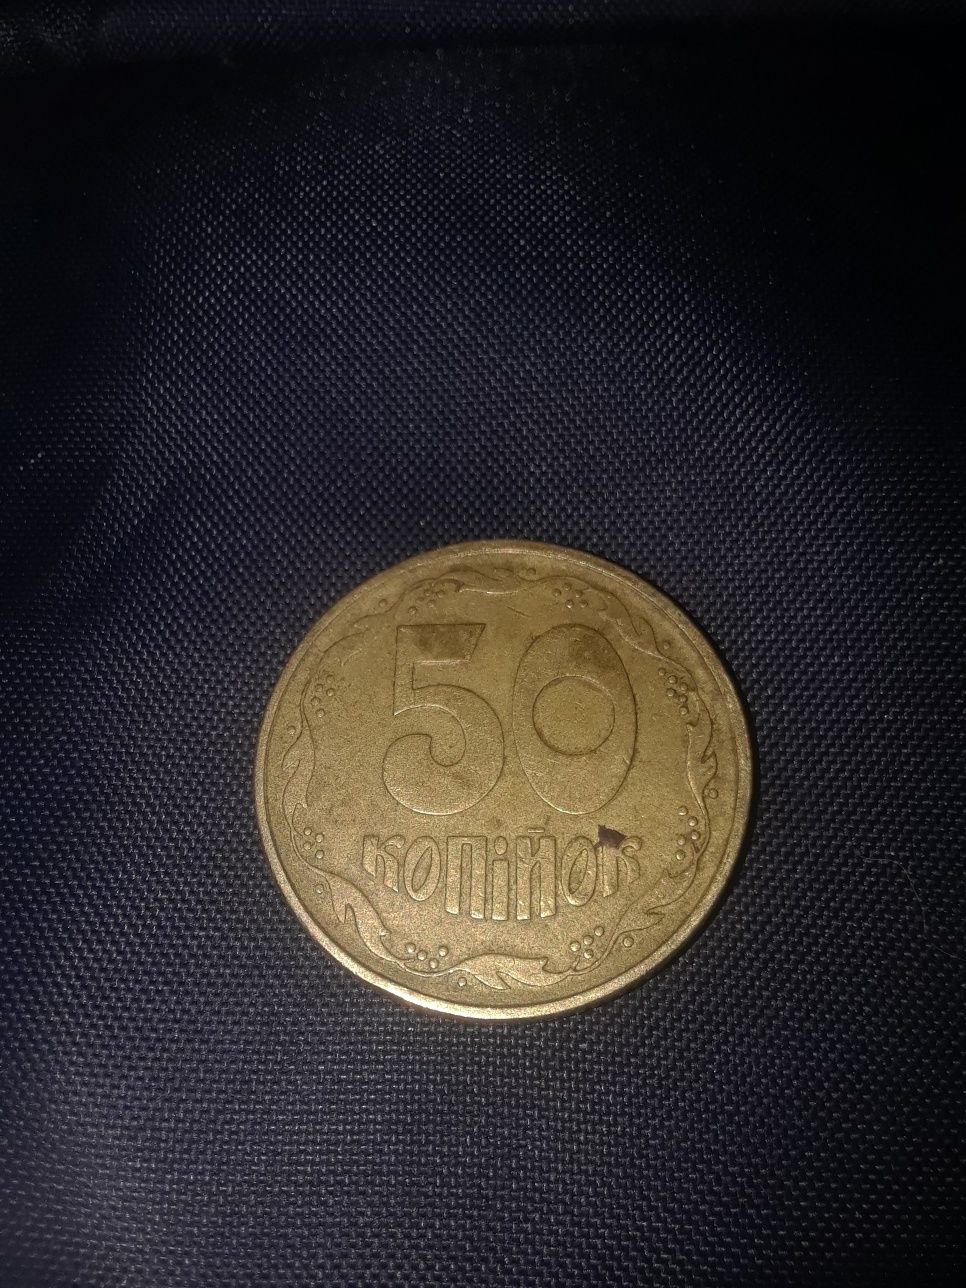 Обмен Монеты 1992г 5 копеек